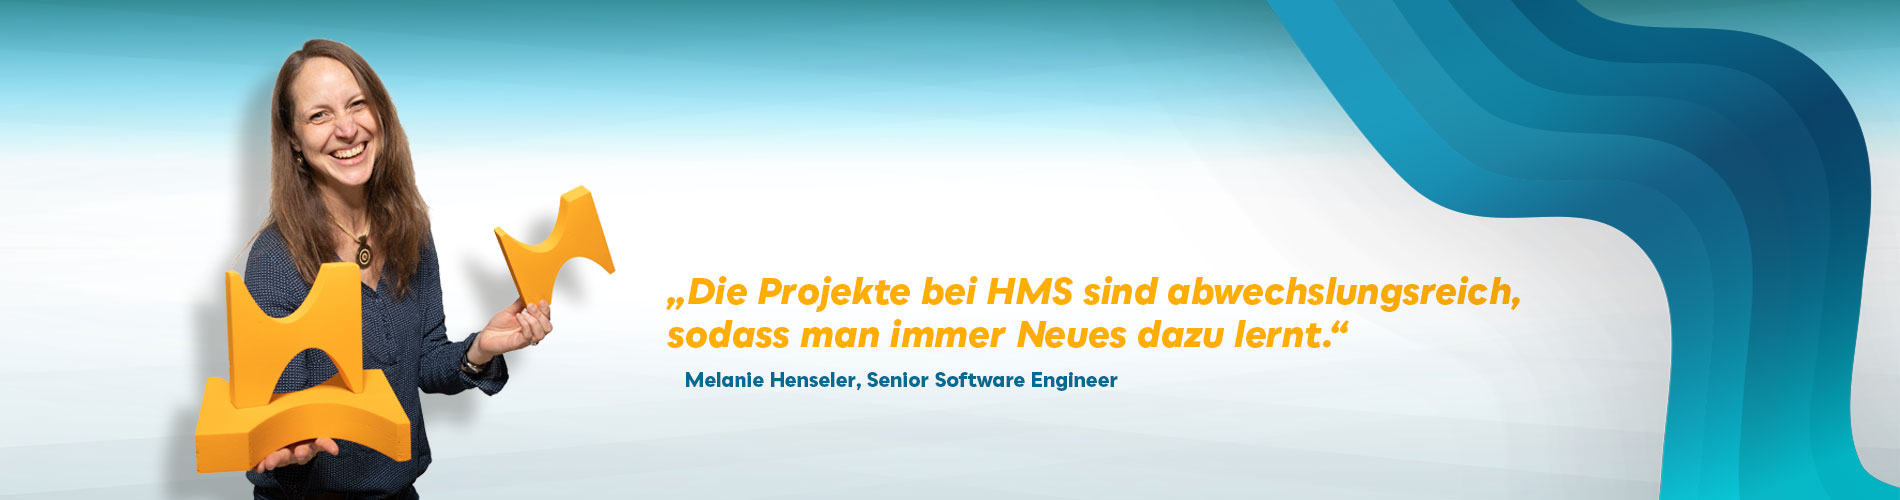 Software Engineer Jobs: Interview MHe